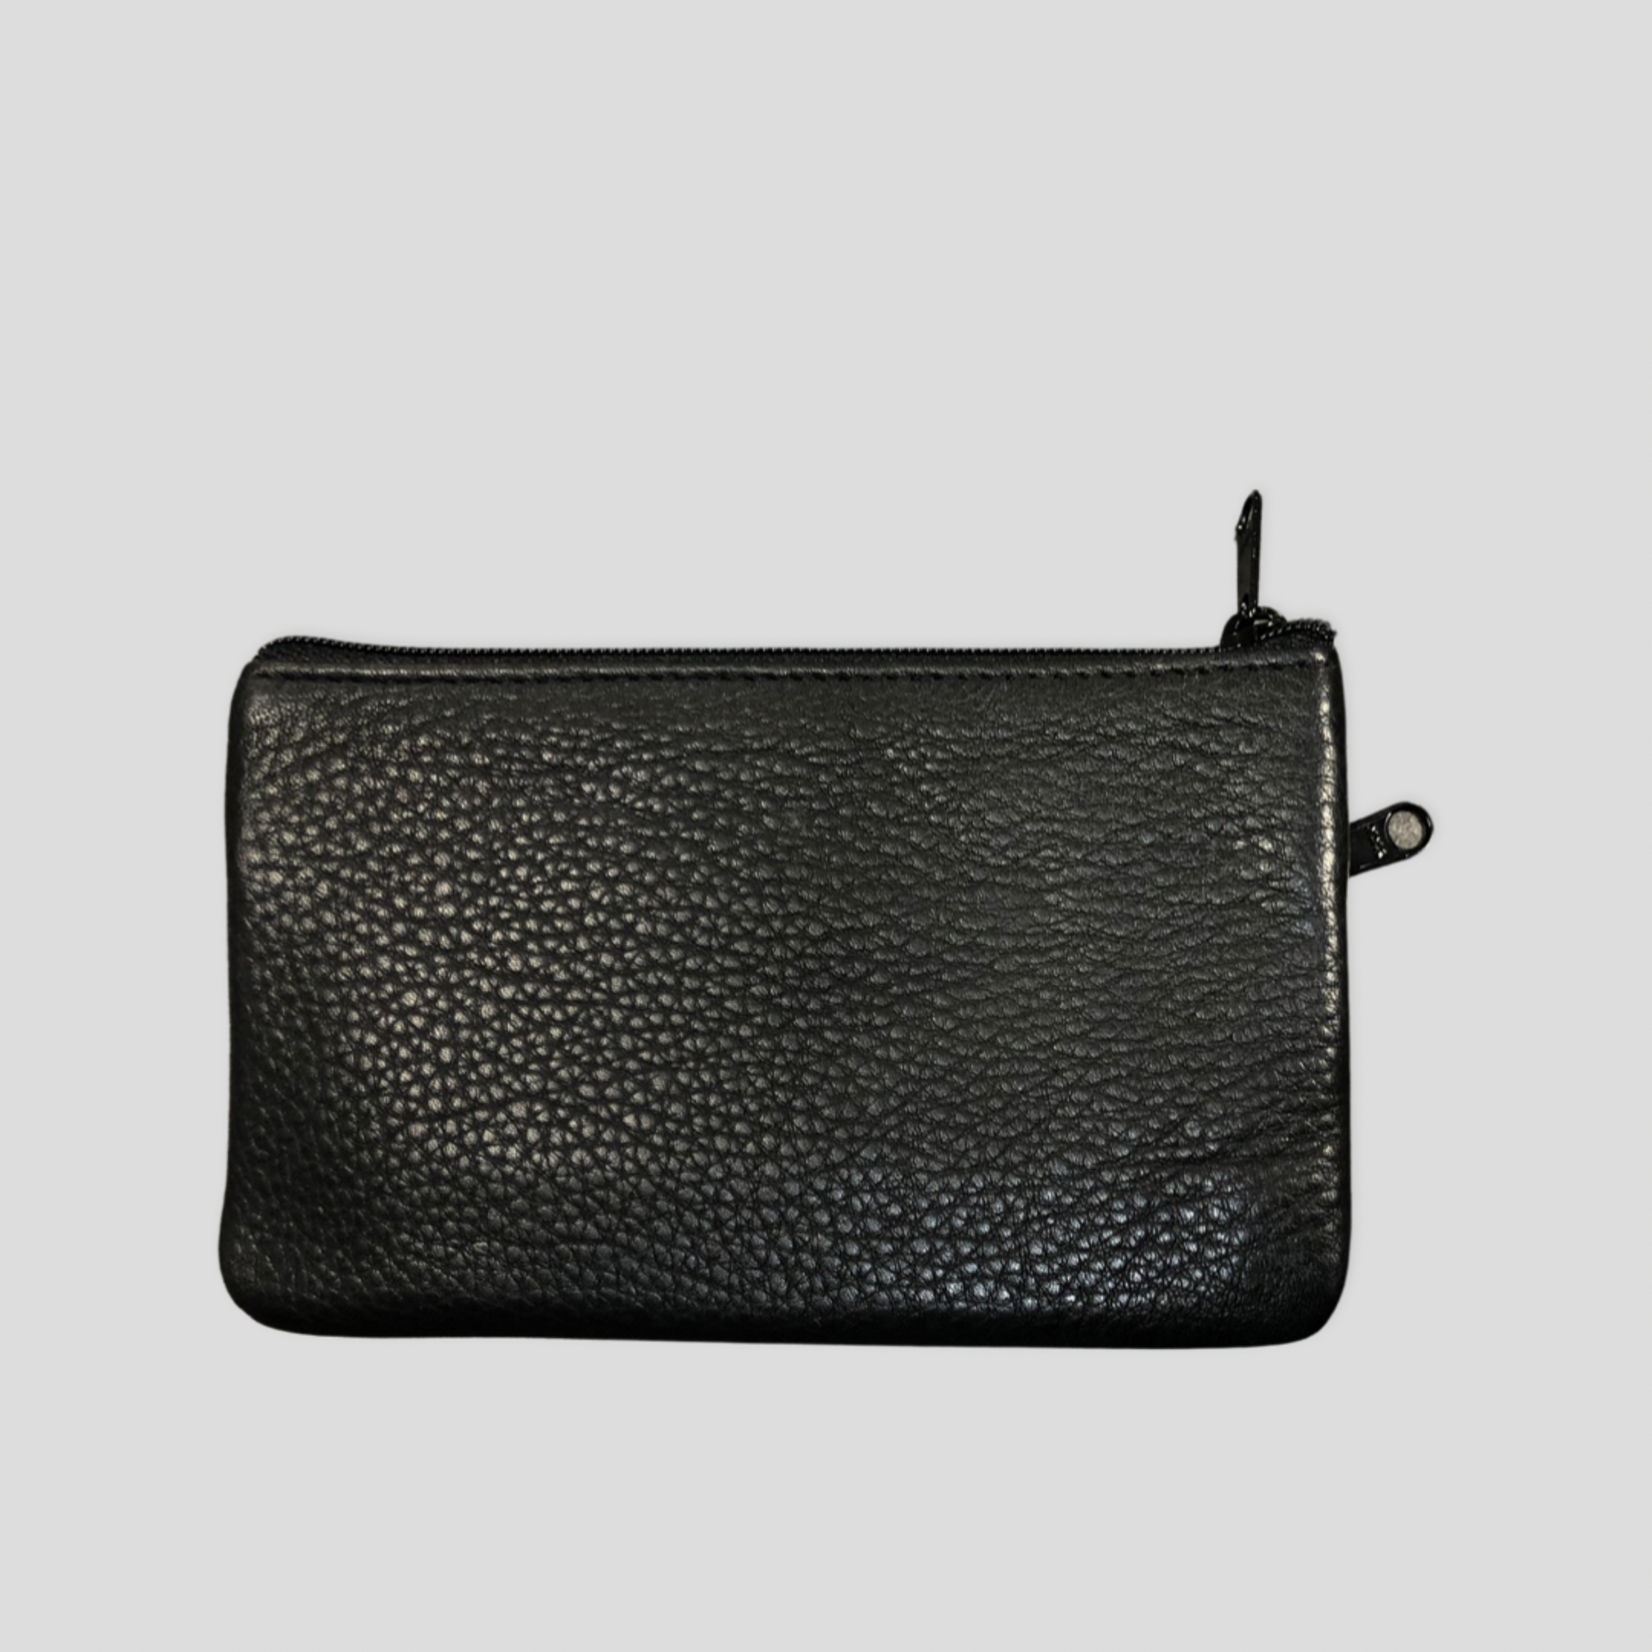 franco bonini black leather card coin purse